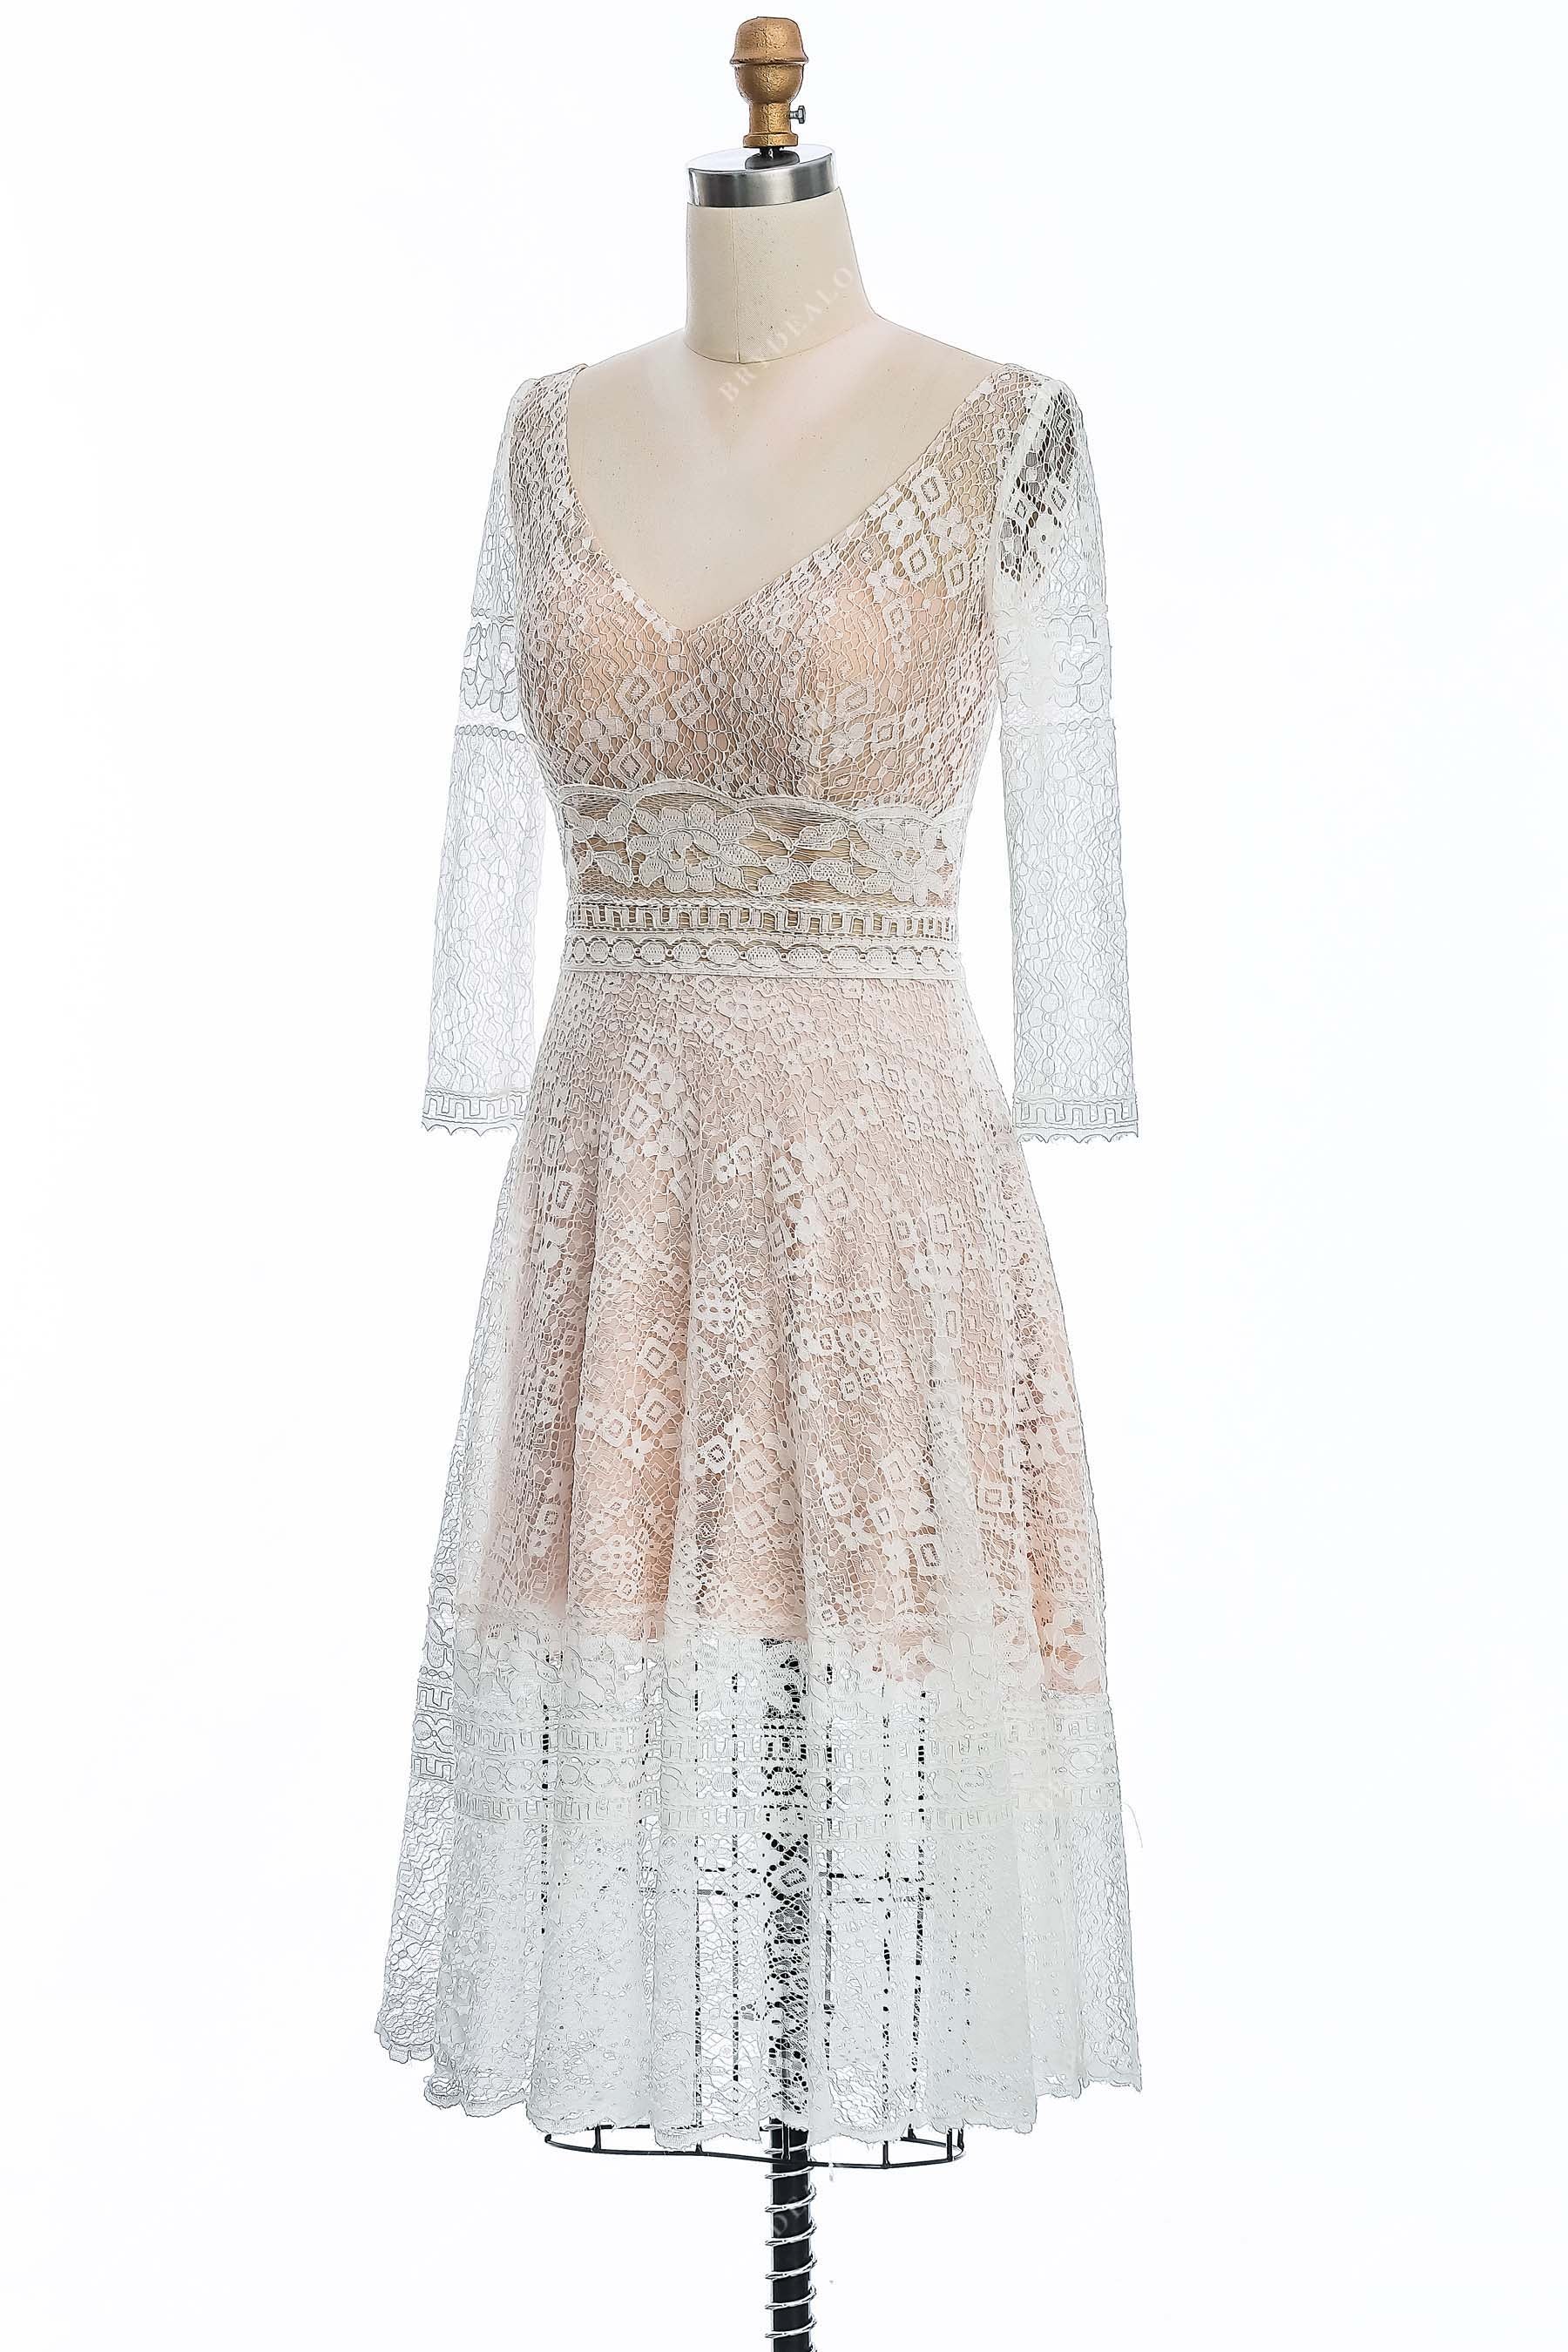 short A-line lace V-neck informal wedding gown